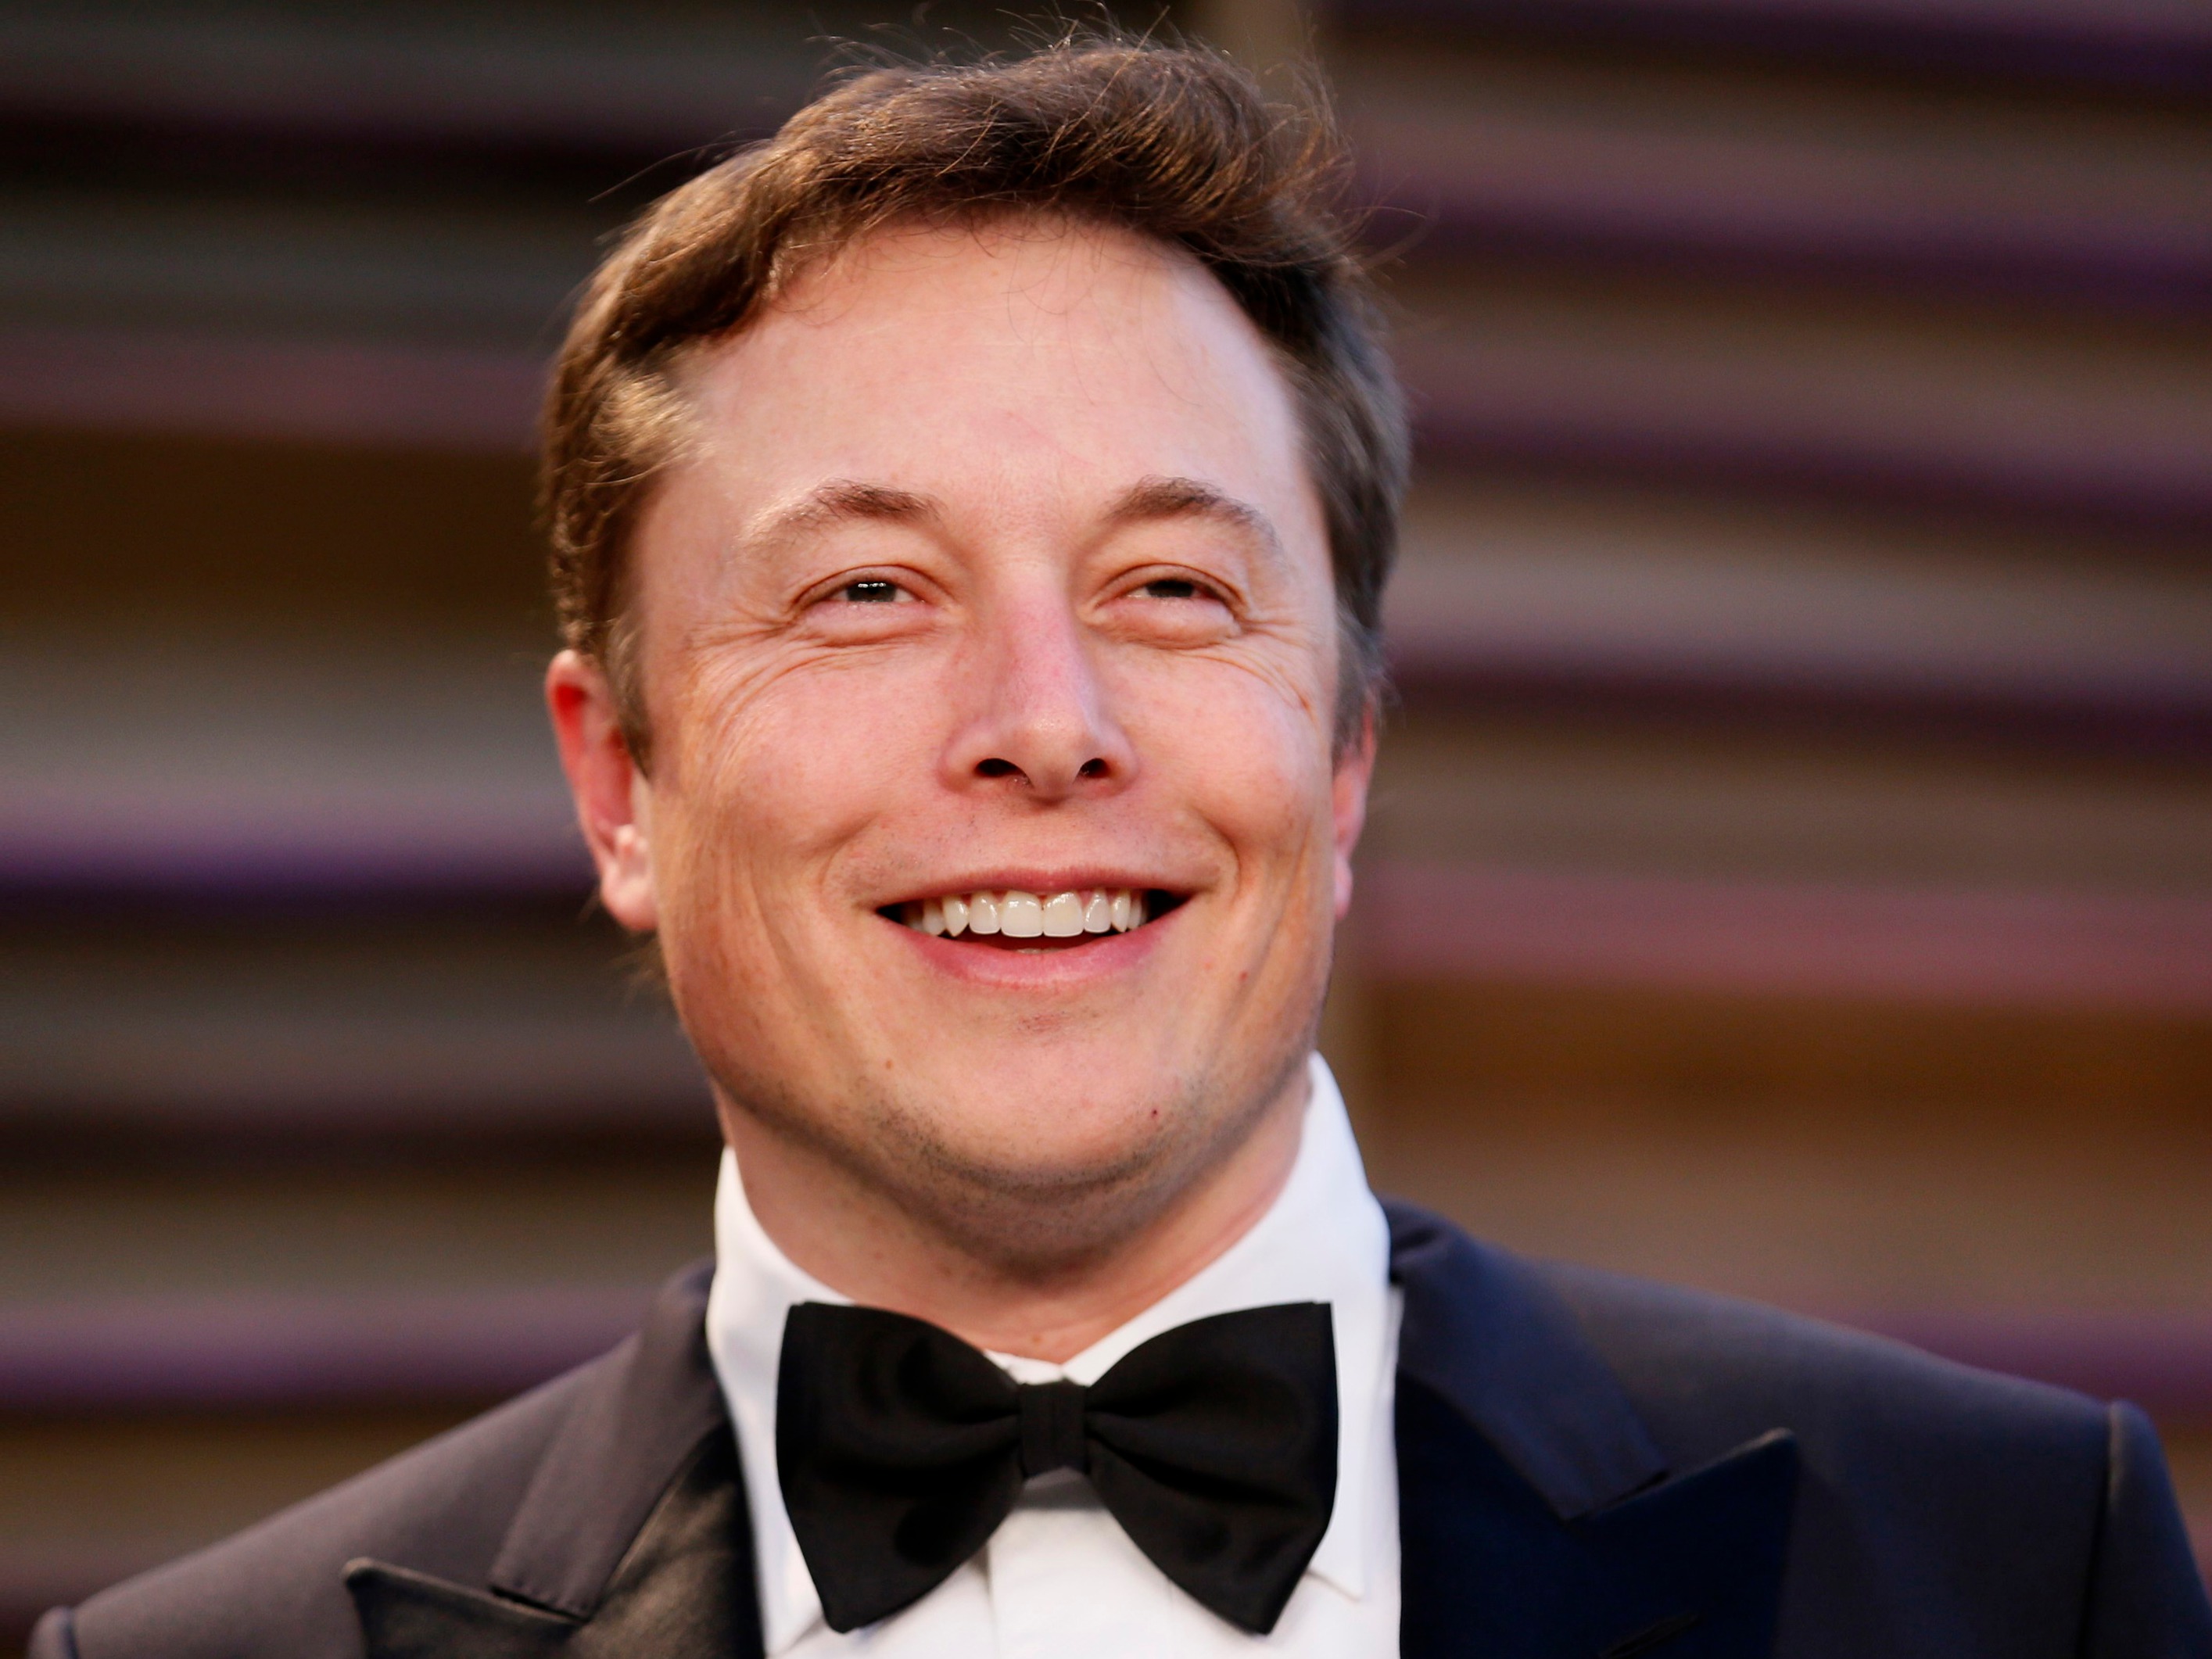 Elon Musk strânge mâna chinezilor: Tesla va primi un împrumut de 1,4 mld.dolari de la băncile chineze pentru fabrica din Shanghai